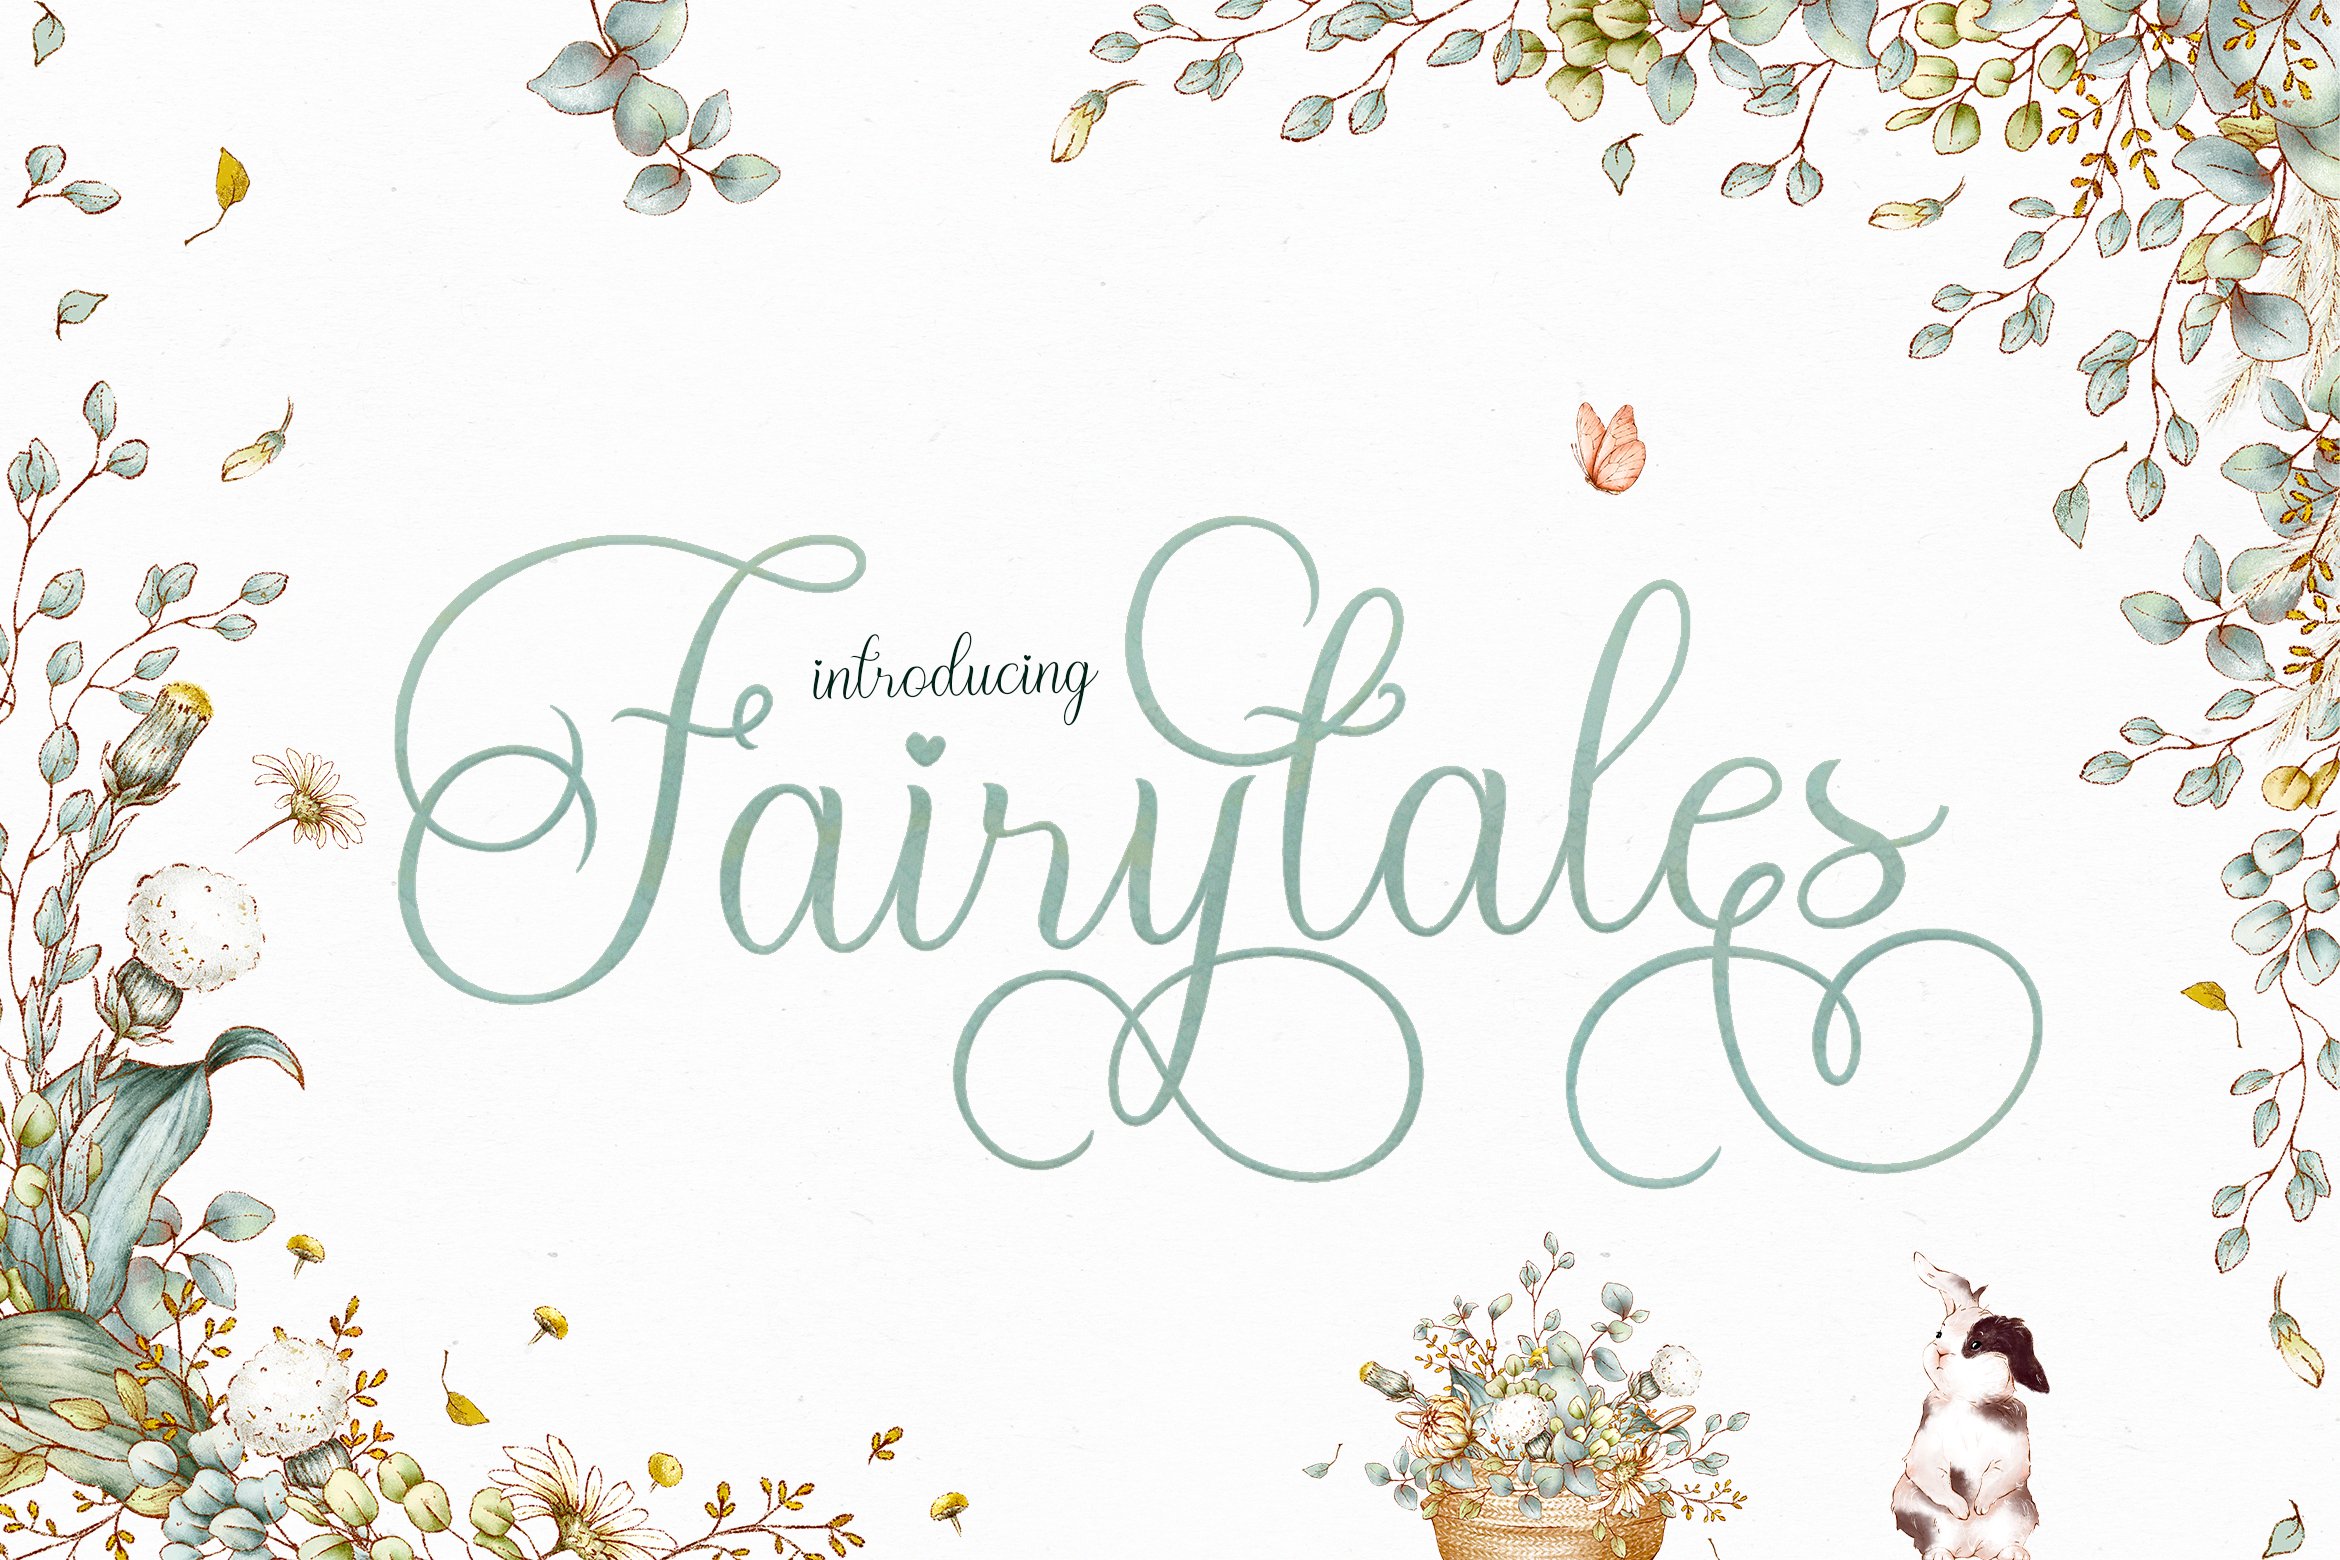 Fairytales Script Font cover image.